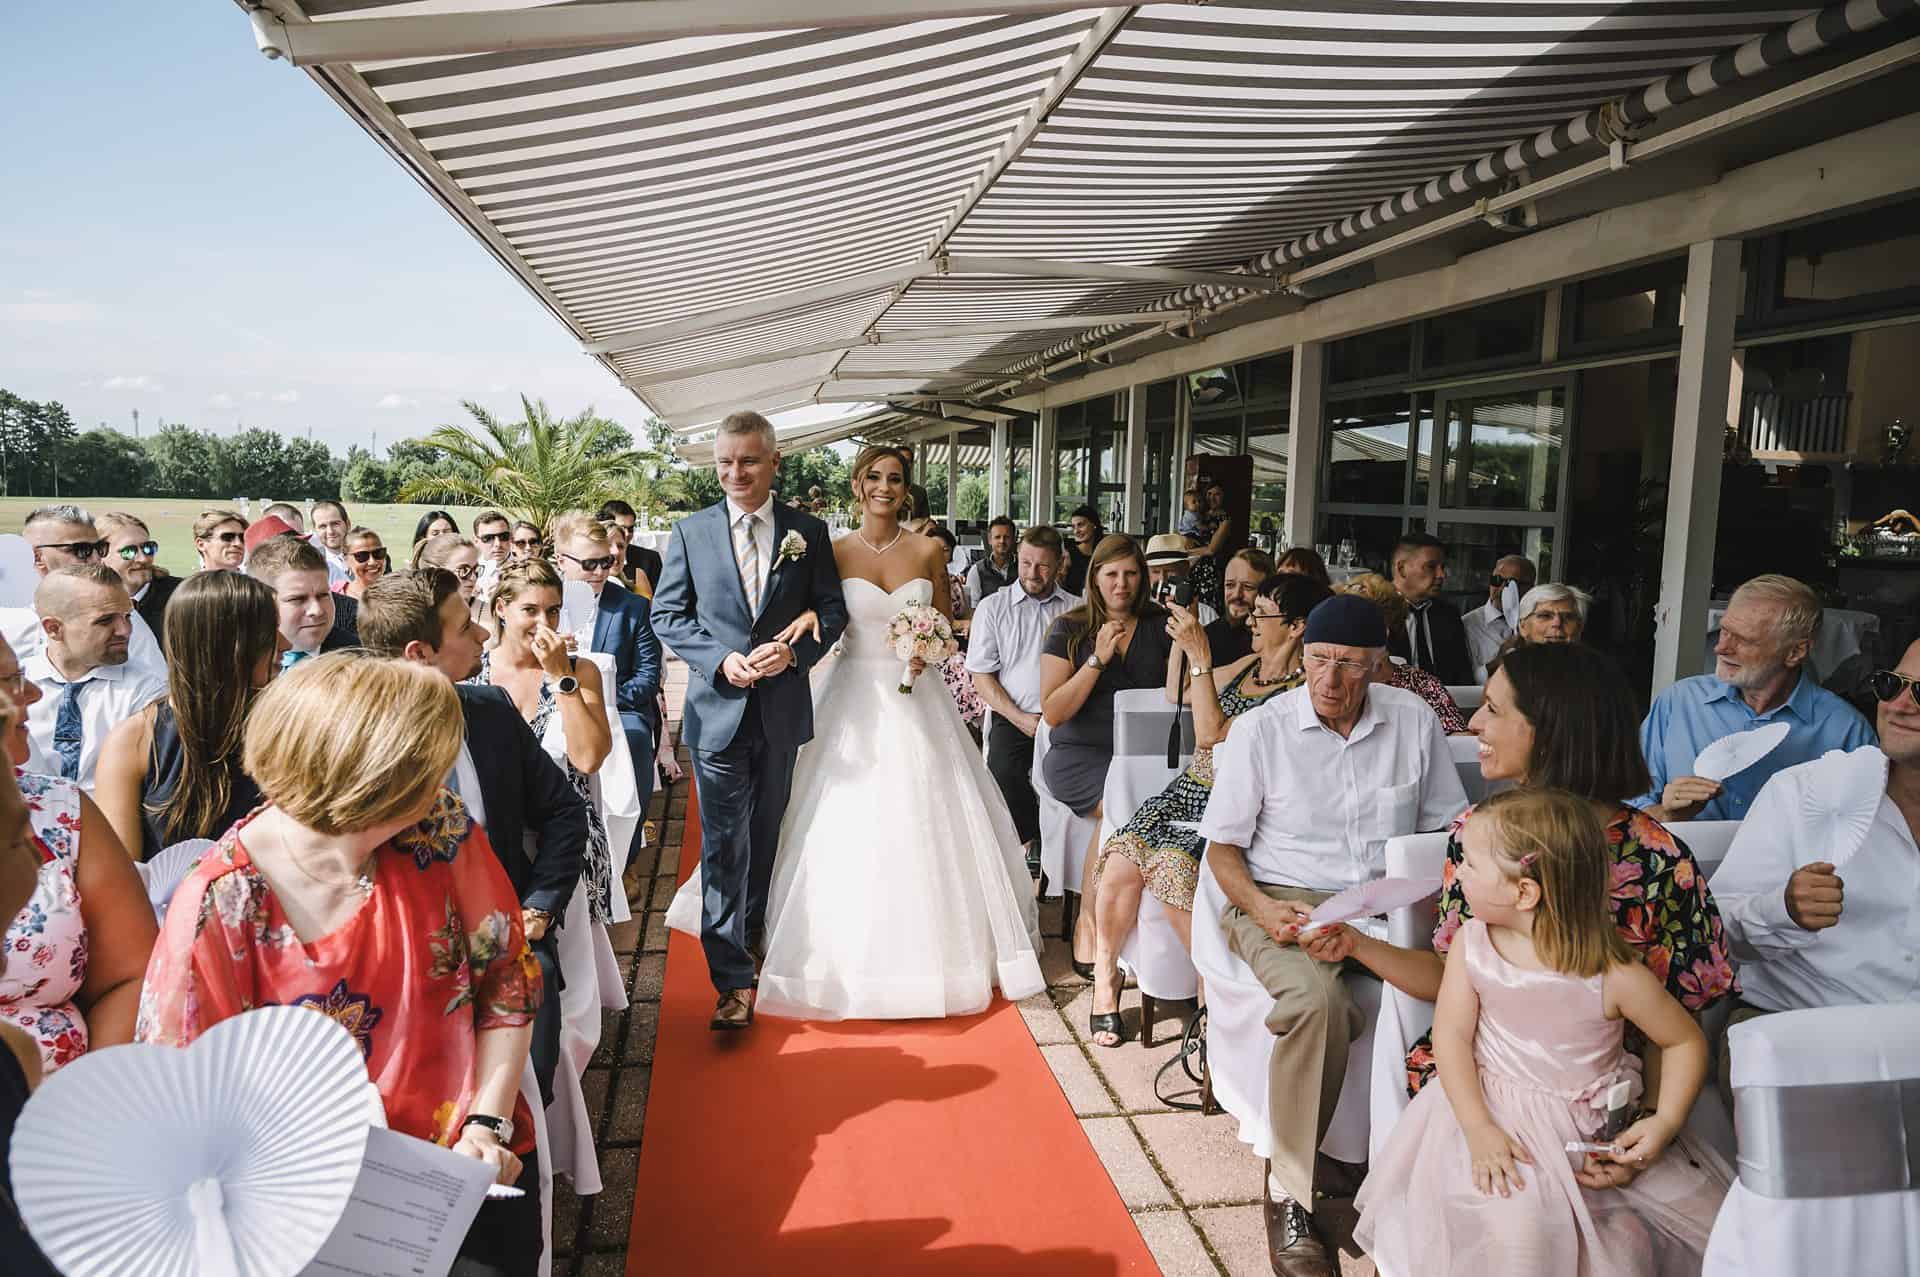 Eine Braut und ein Bräutigam gehen bei einer Hochzeitszeremonie den Gang entlang.